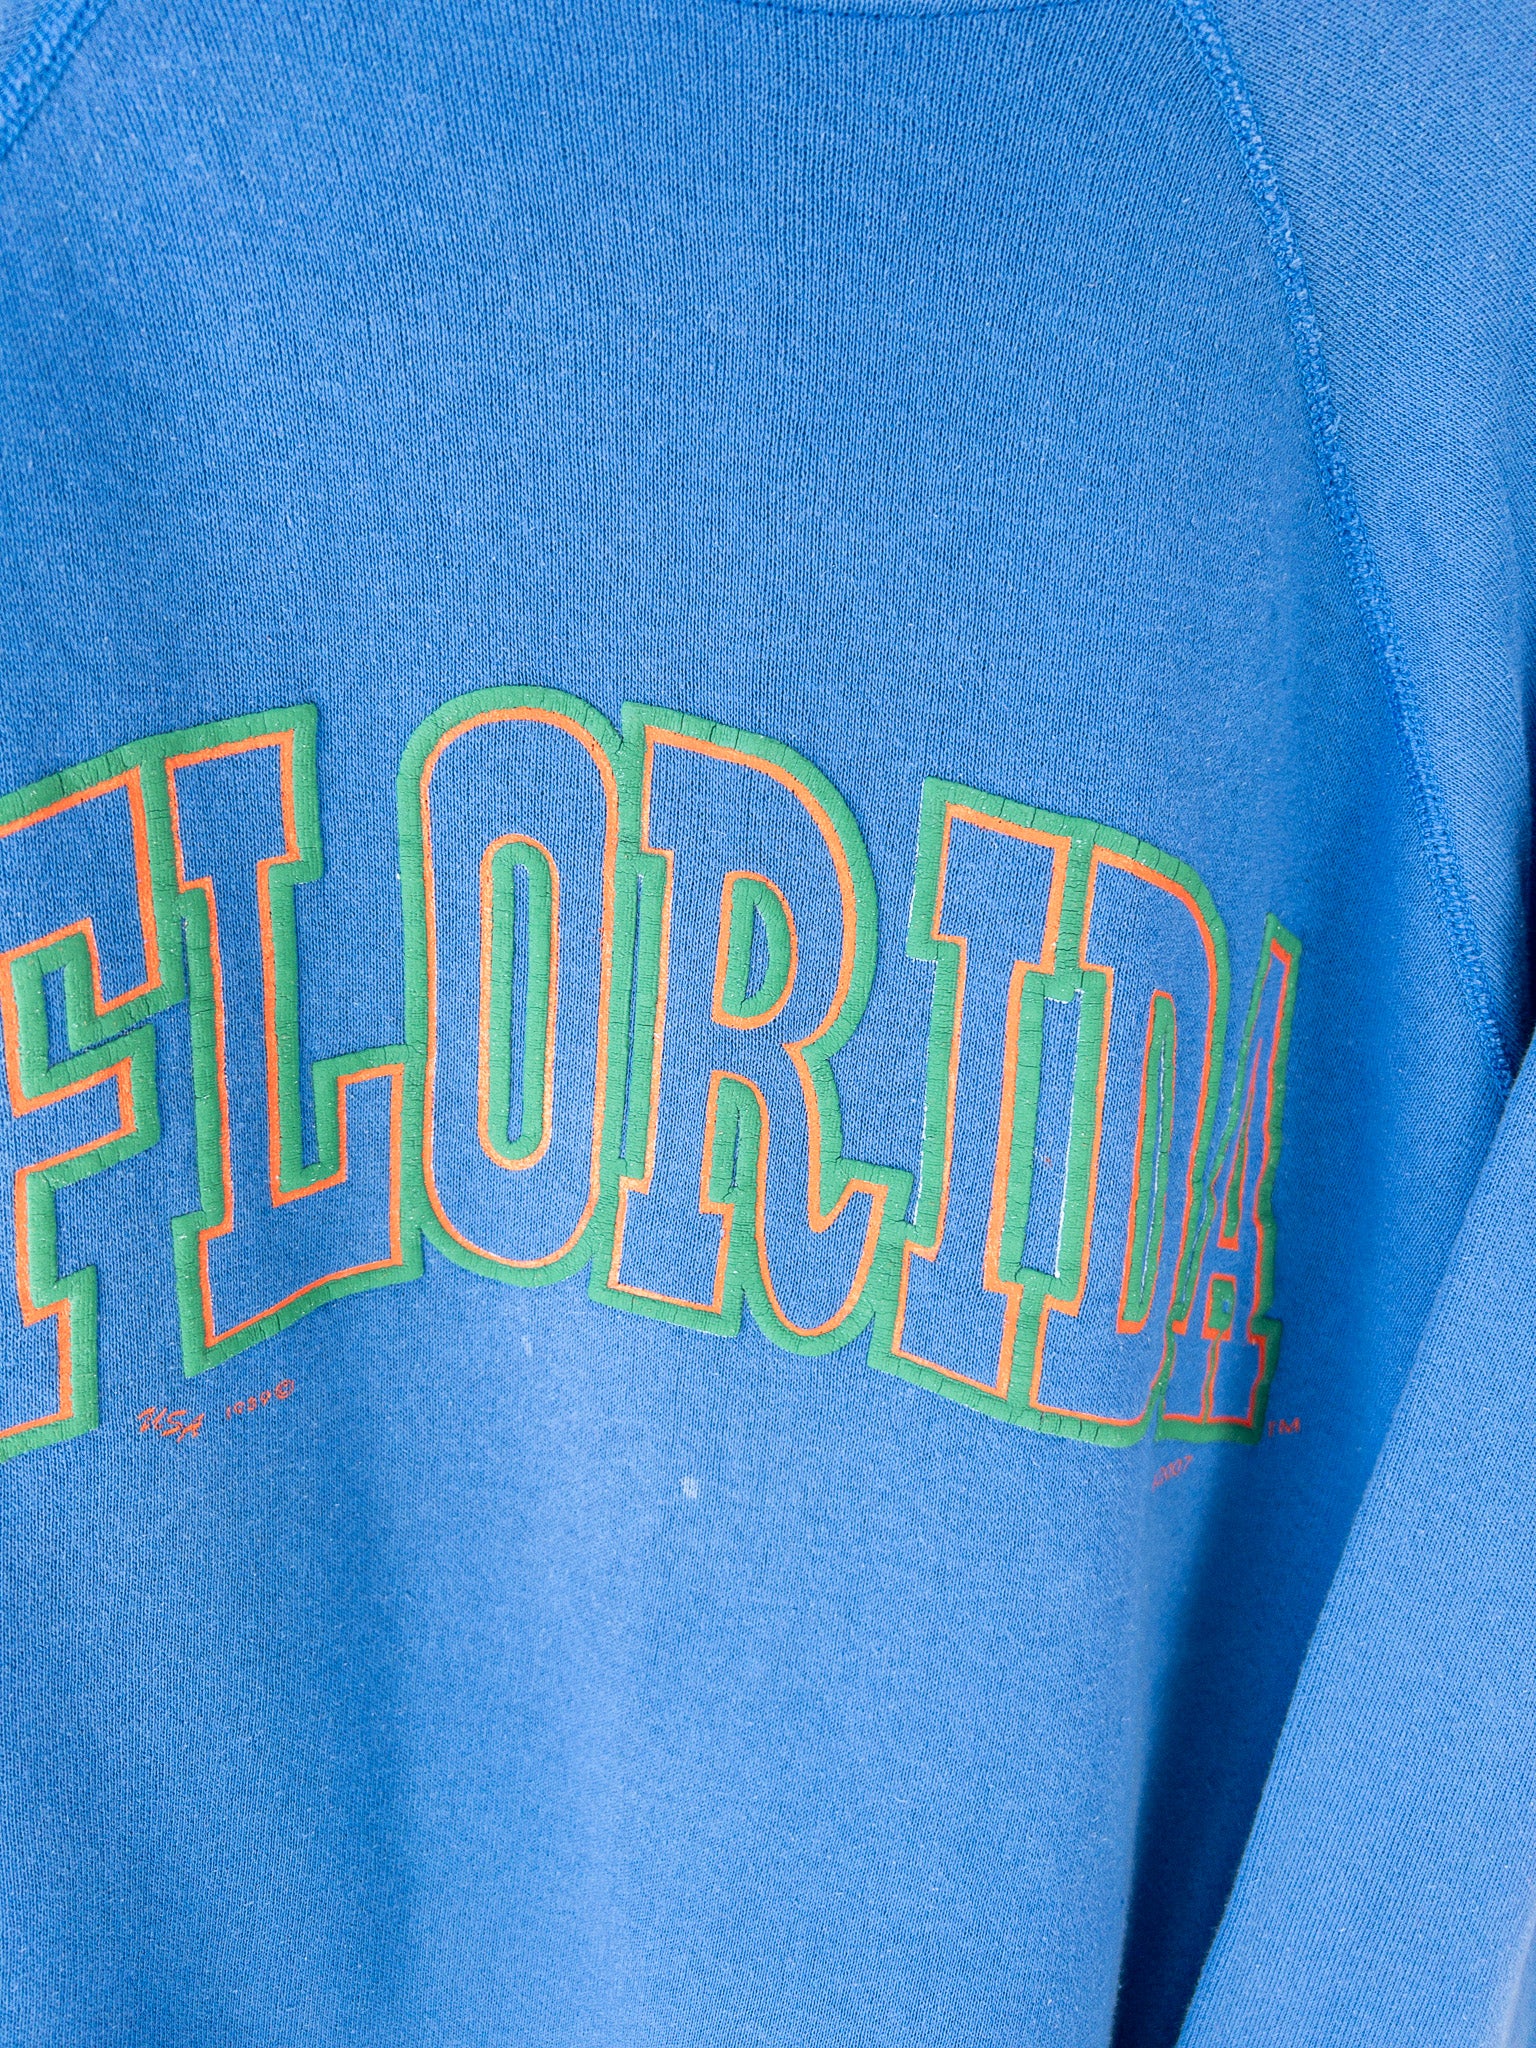 Vintage Florida Gators 1989 Sweatshirt (L)